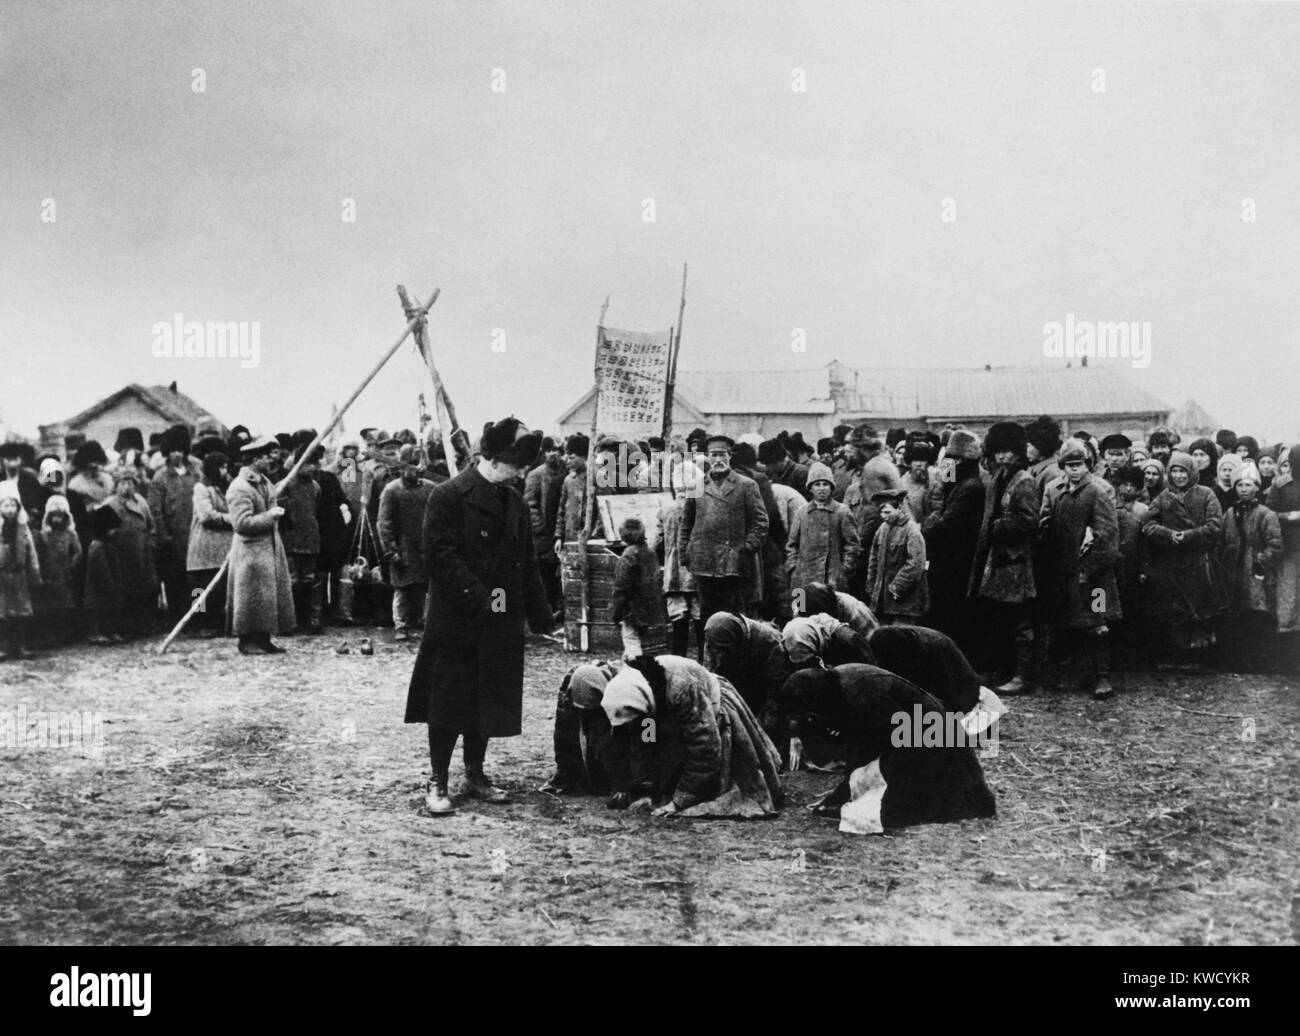 American Relief Administration verteilen Lebensmittel in die Wolga, 1921. Russische Frauen erbärmlich Knien in der Nähe (BSLOC 2017 2 26) Stockfoto